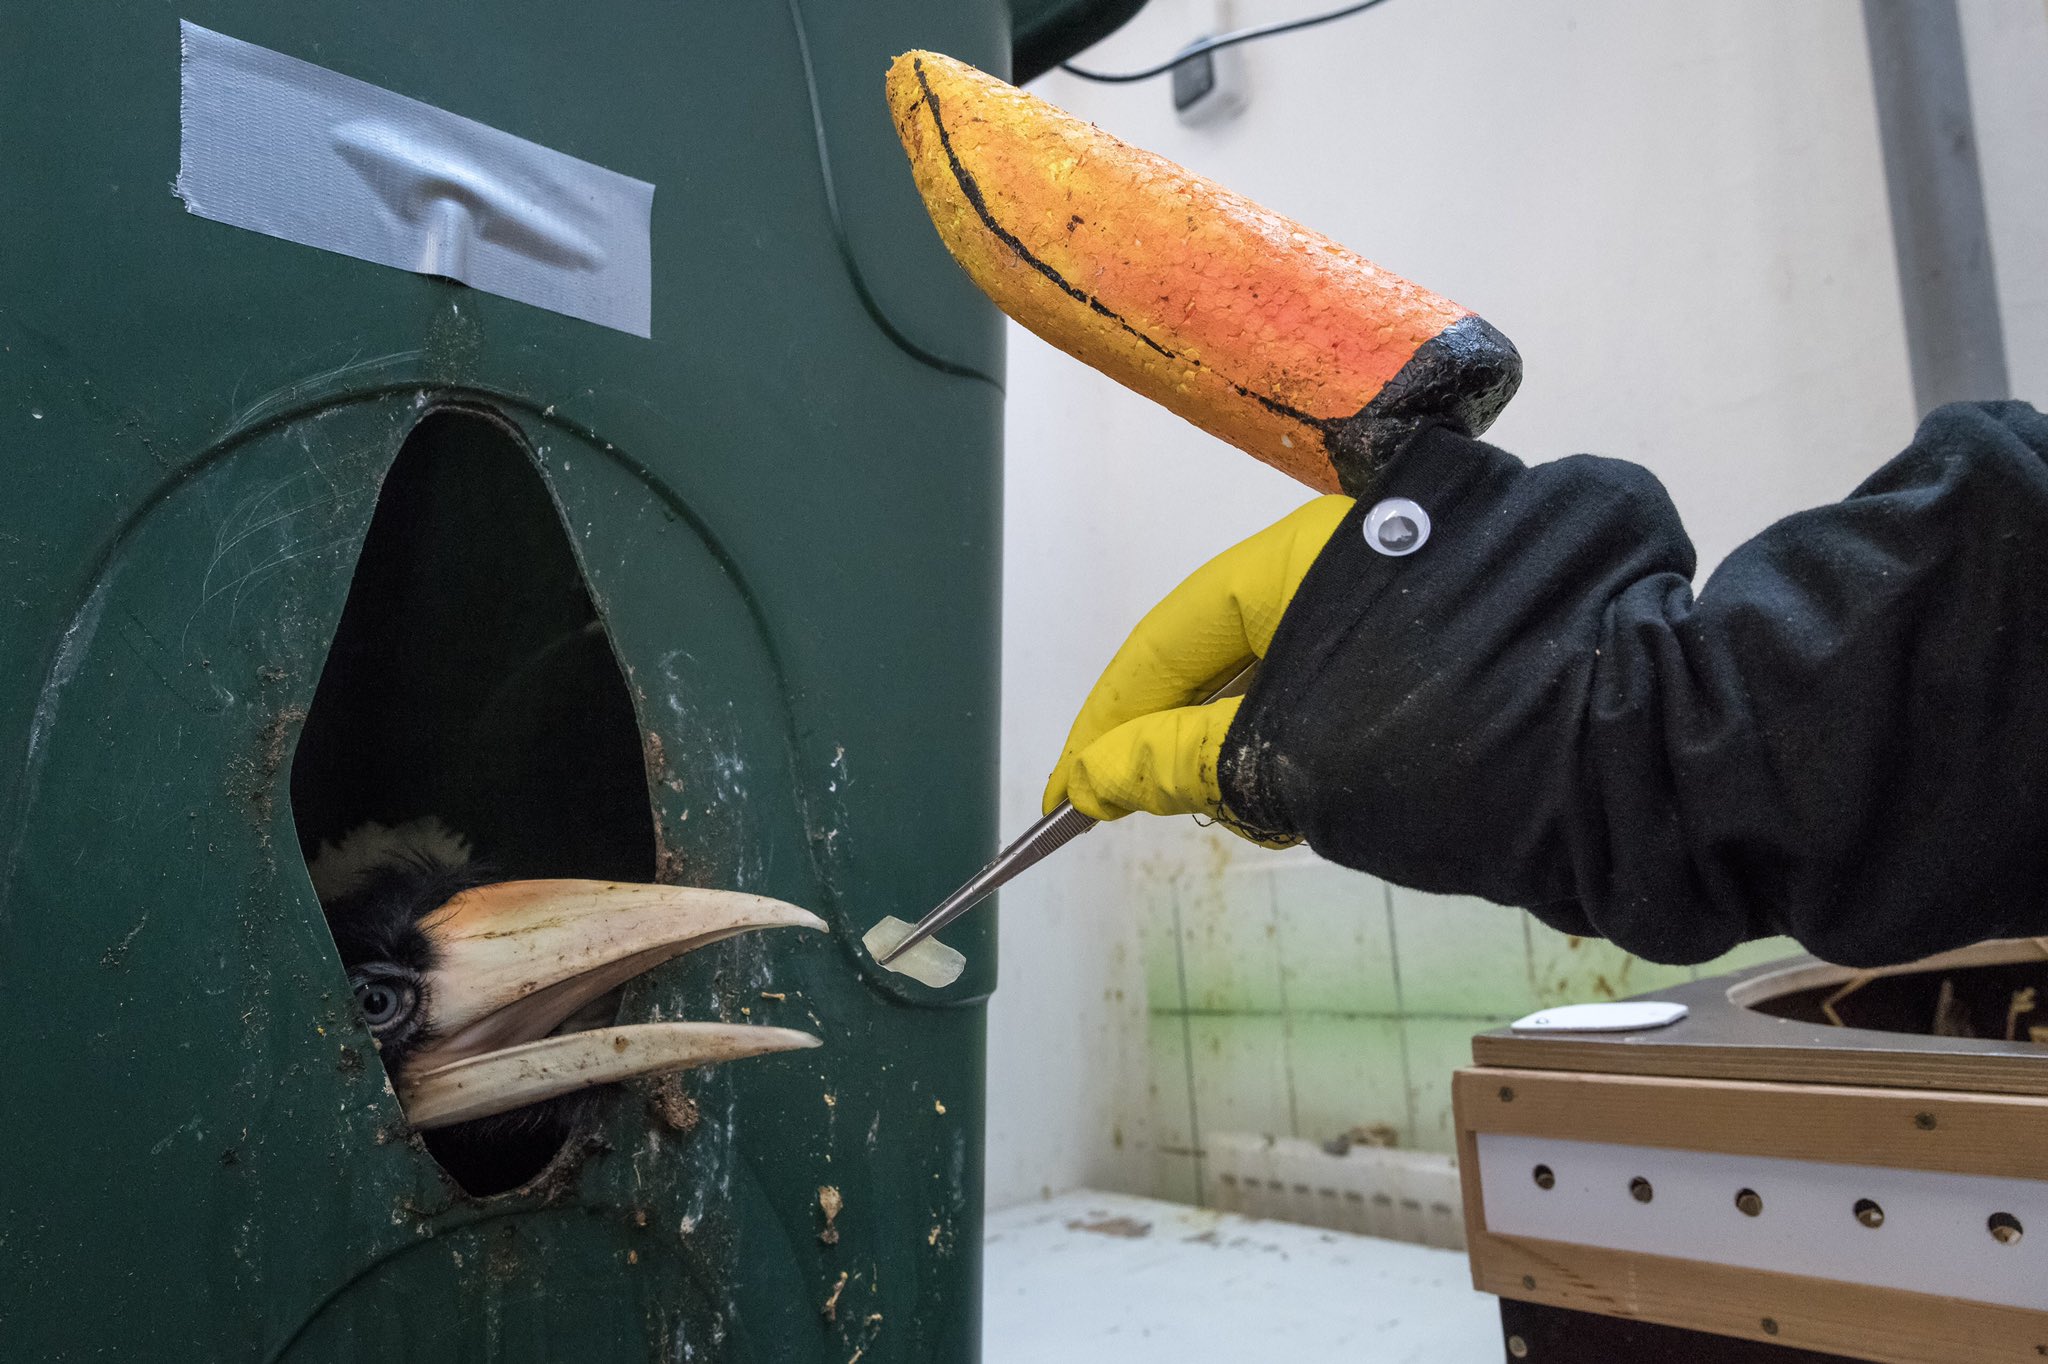 How a zoo feeds their baby hornbills